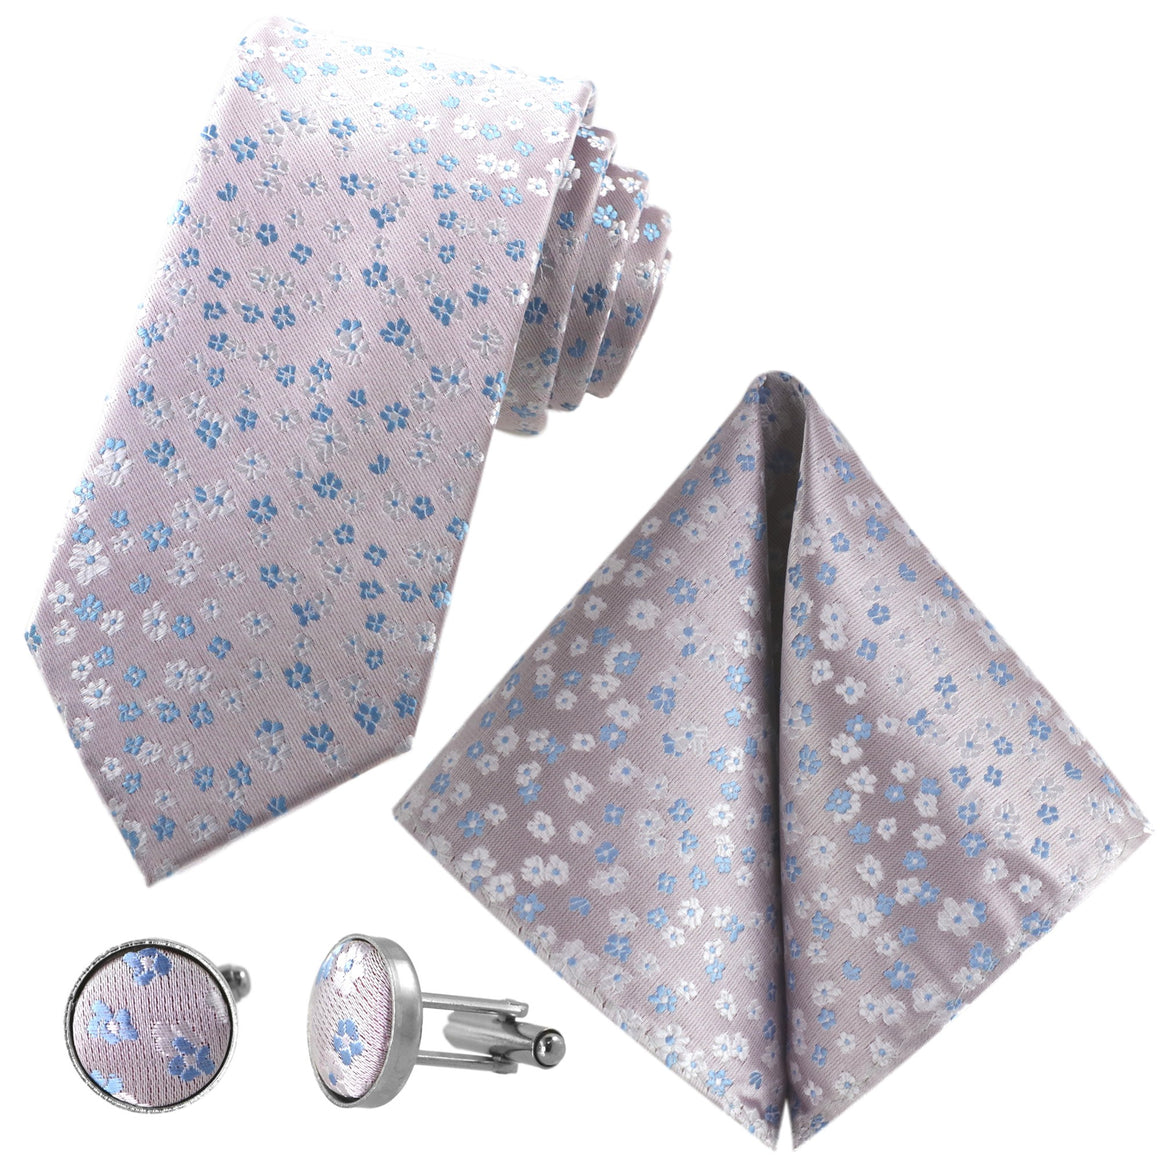 Sada kravat GASSANI 3-SET, šíře 8 cm.Dlouhá starorůžová pánská kravata, úzká svatební kravata